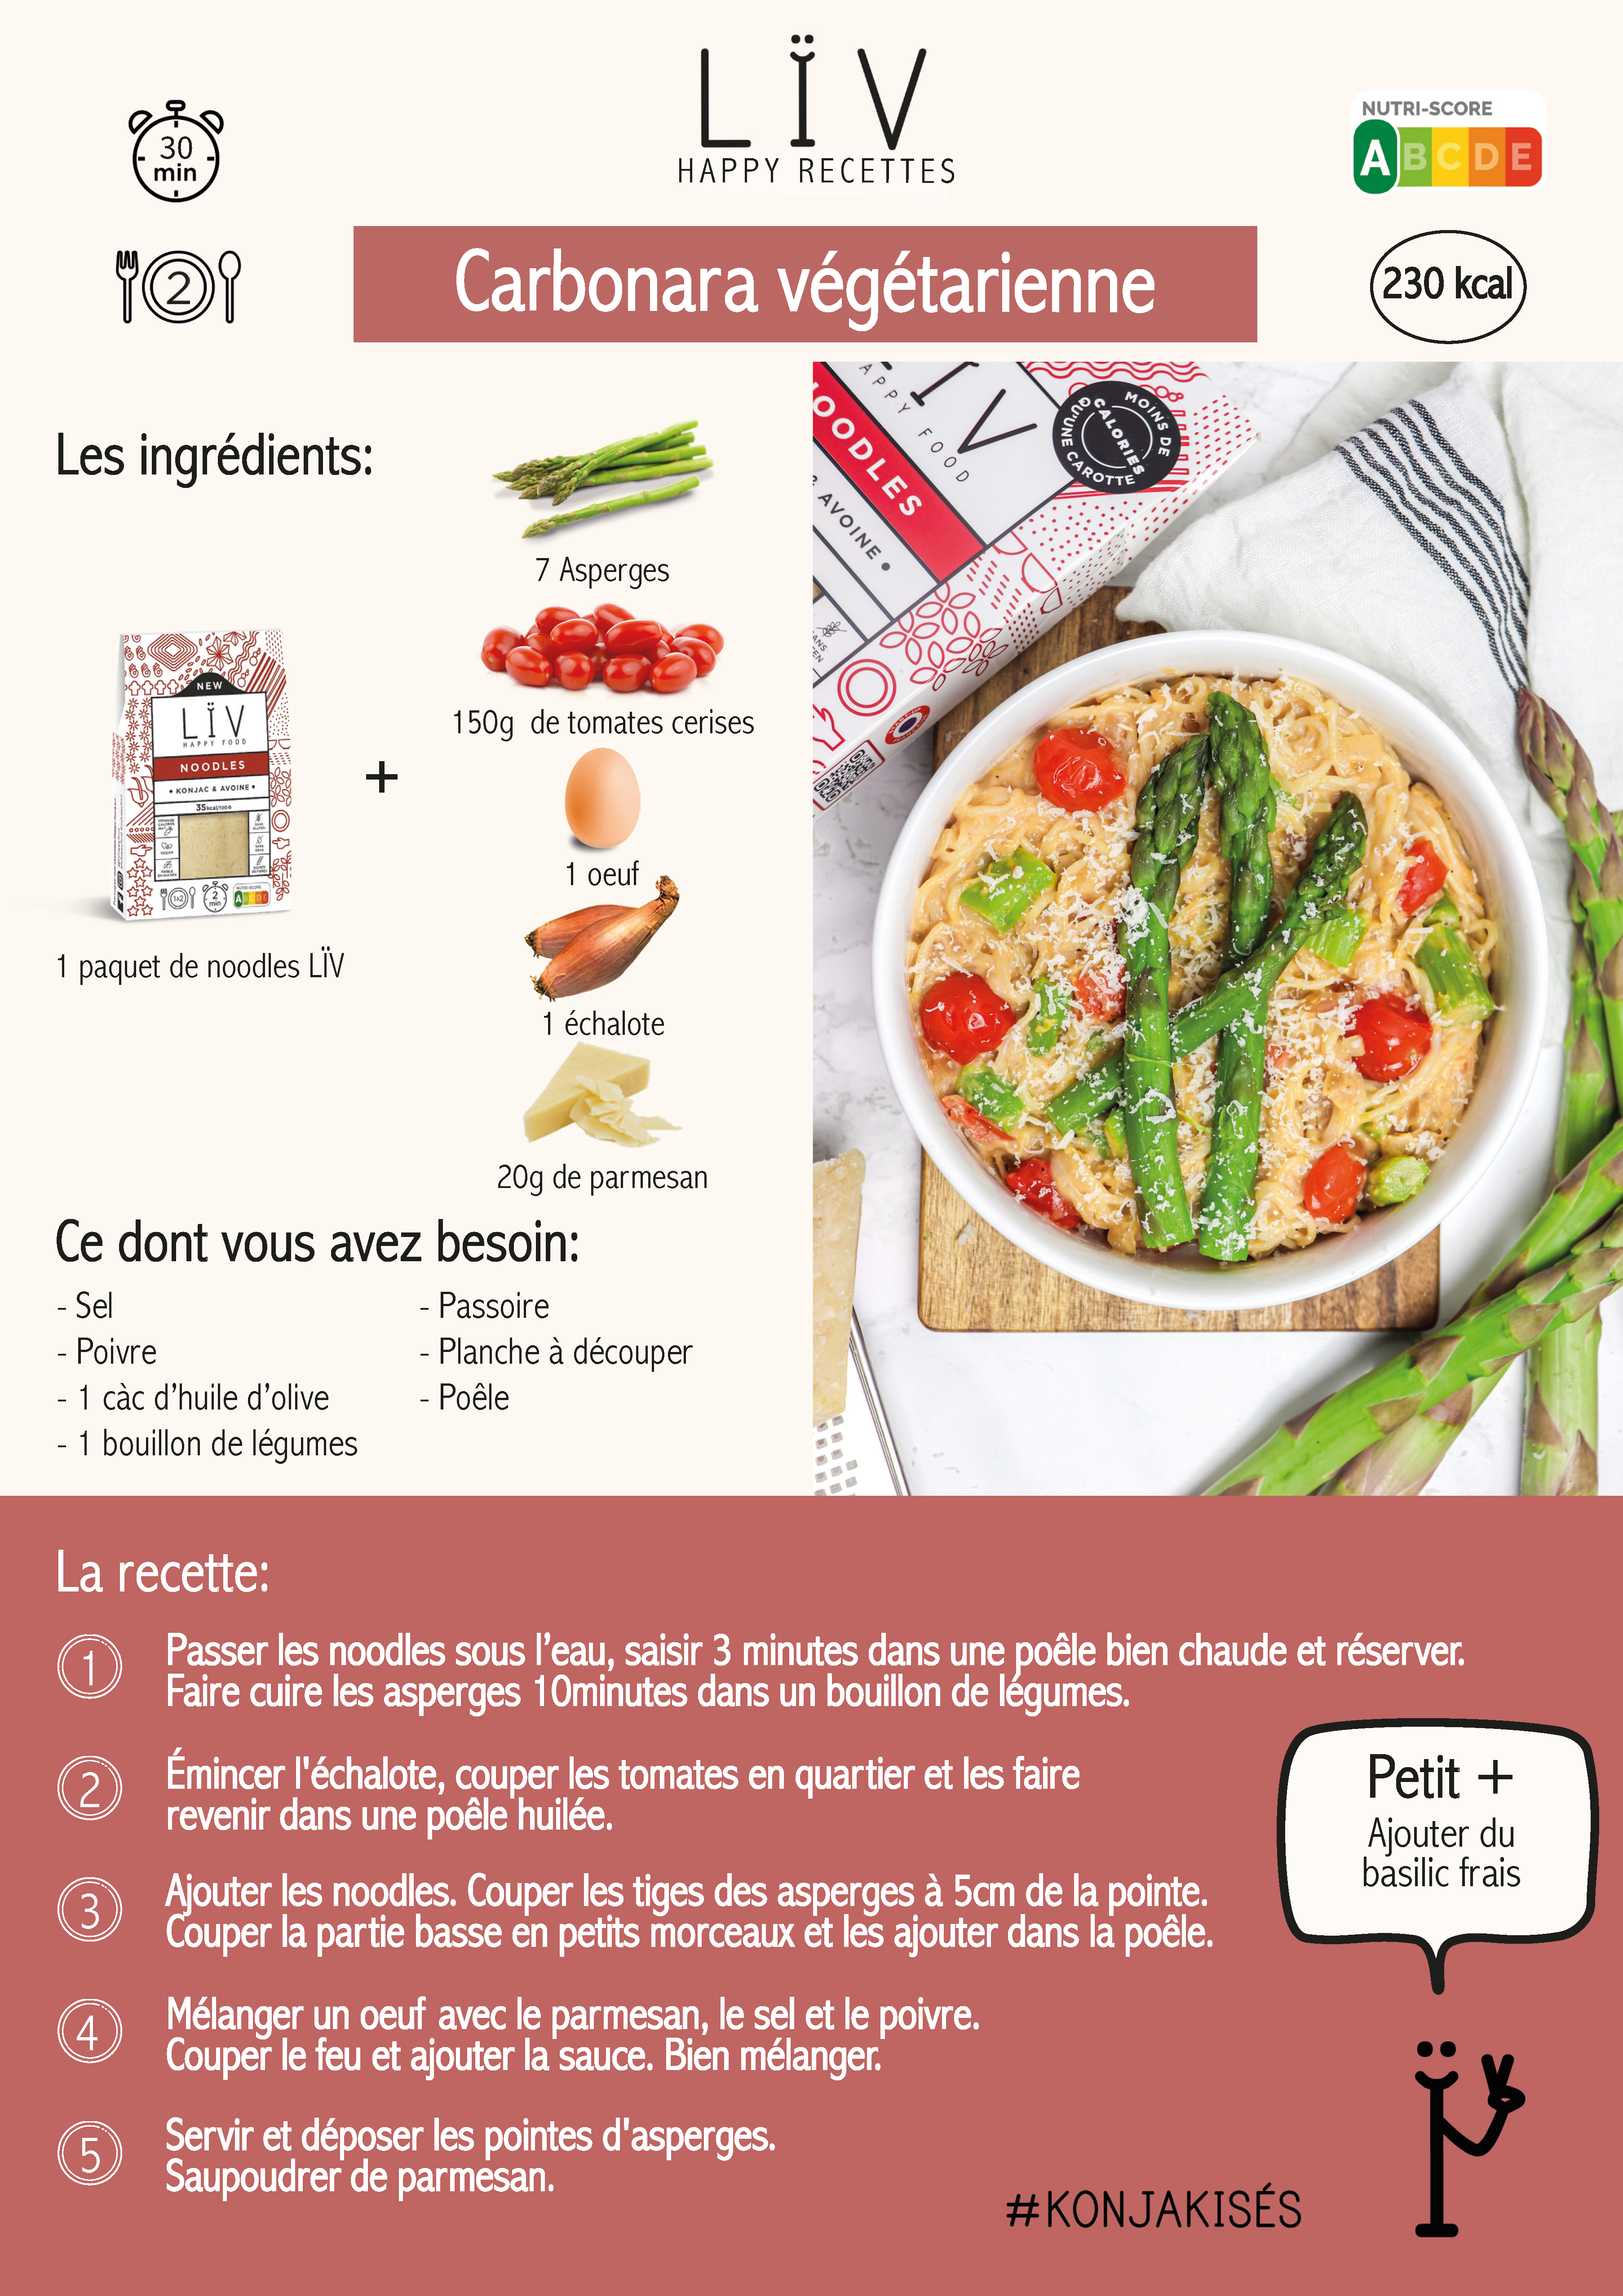 LÏV HAPPY FOOD // Konjac is the new pâtes - Une Pintade à Montpellier